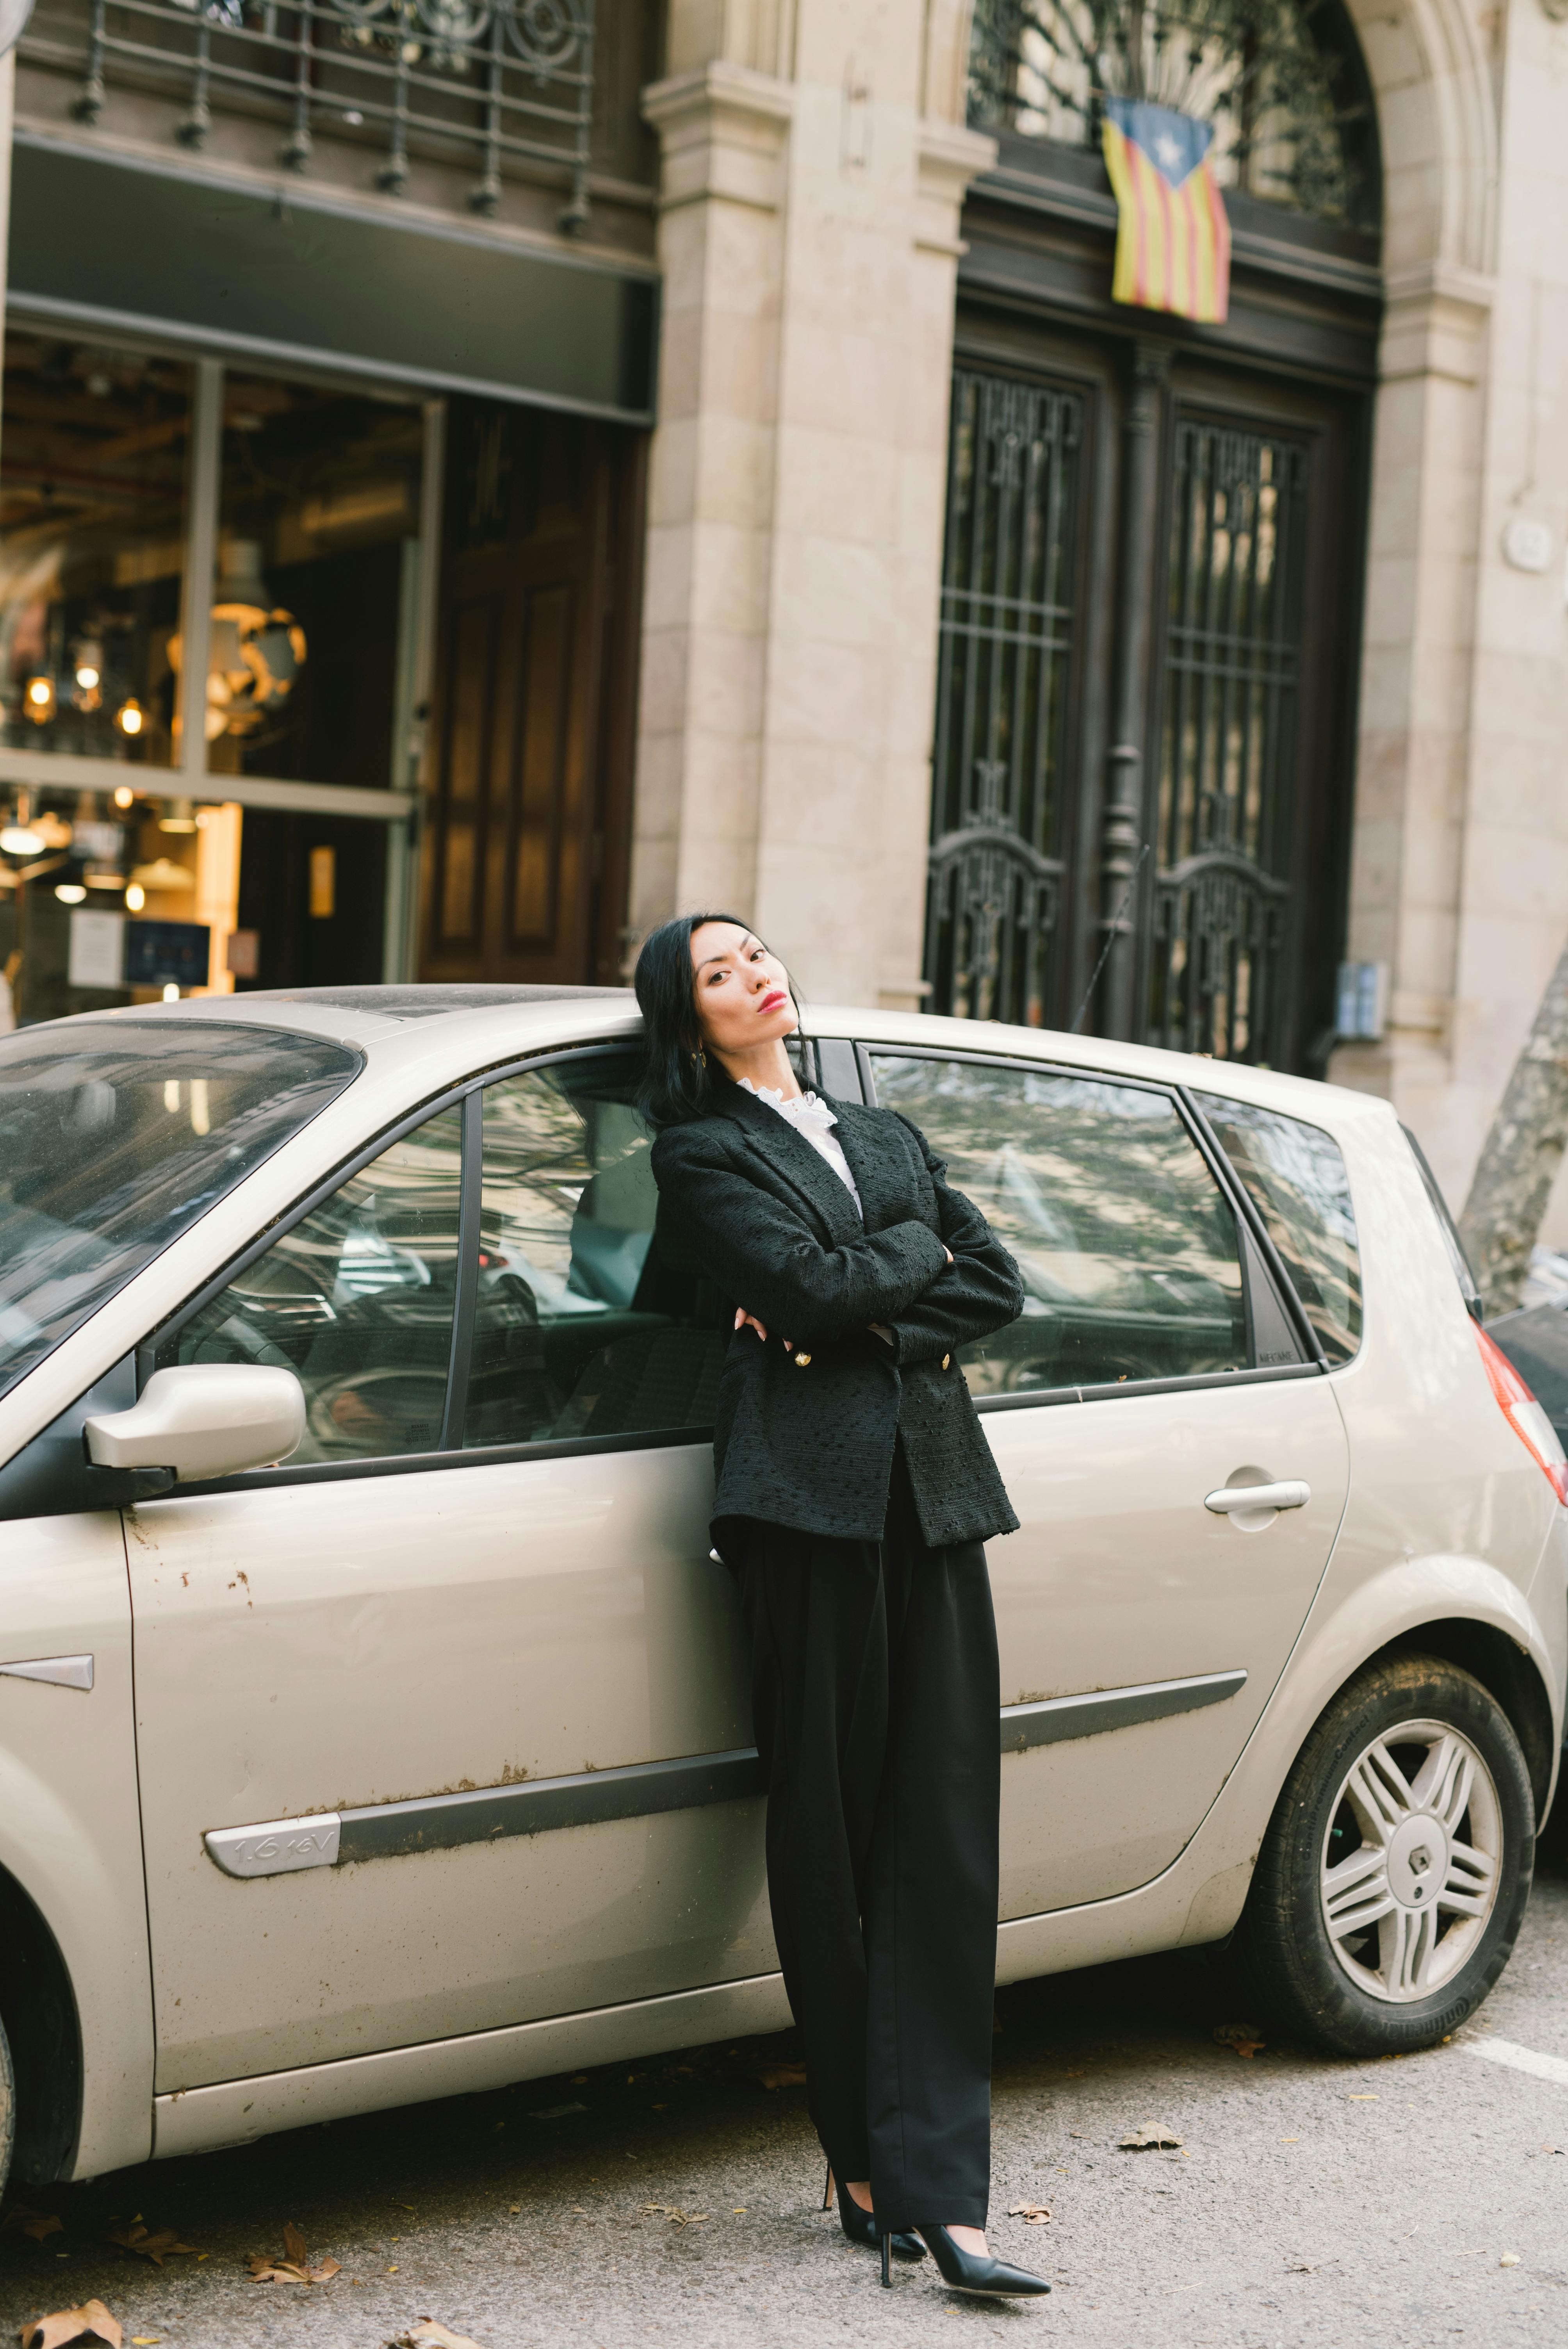 Una mujer junto a un Automóvil | Fuente: Pexels